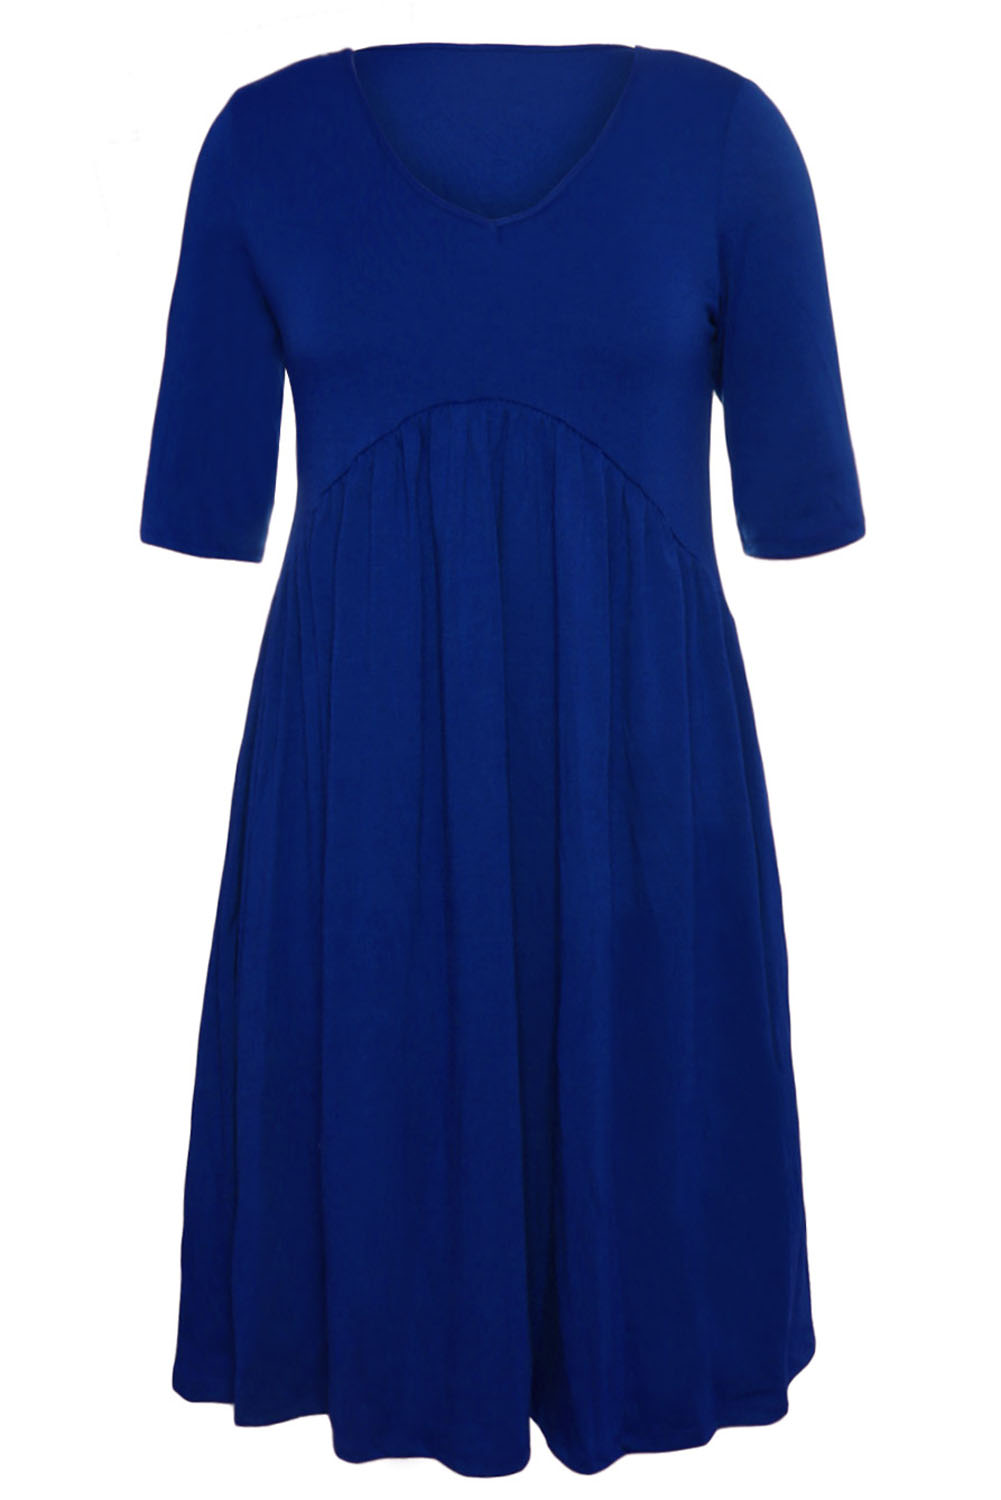 BY61653-5 Blue  Sleeve Draped Swing Dress